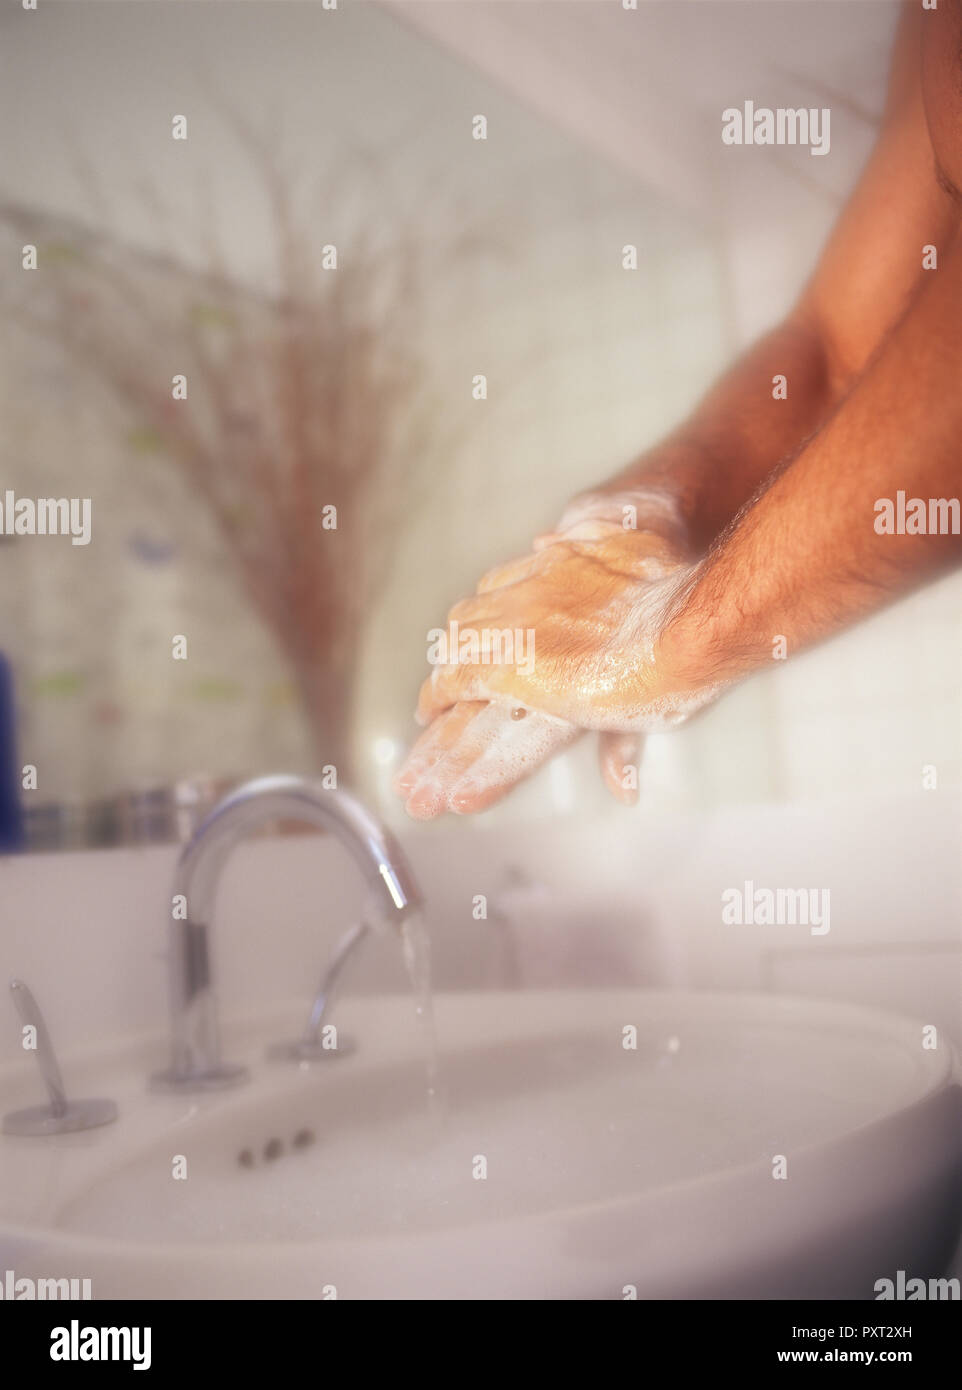 Hombre fregado y lavado de las manos con vigor contra un fondo suave en el baño. Foto de stock